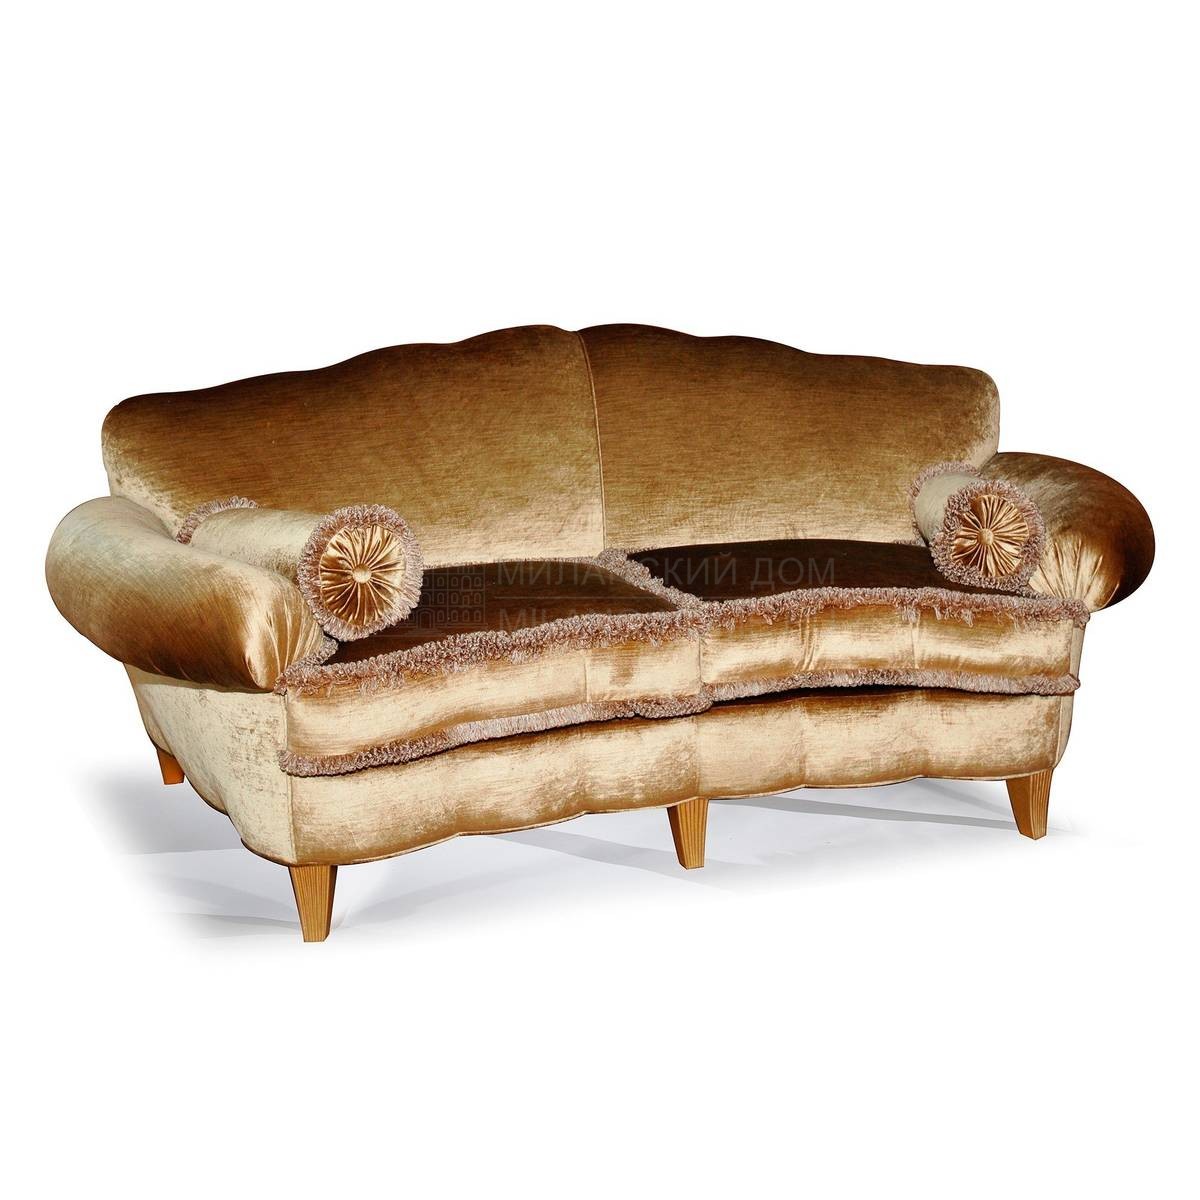 Прямой диван The Upholstery/D425 из Италии фабрики FRANCESCO MOLON